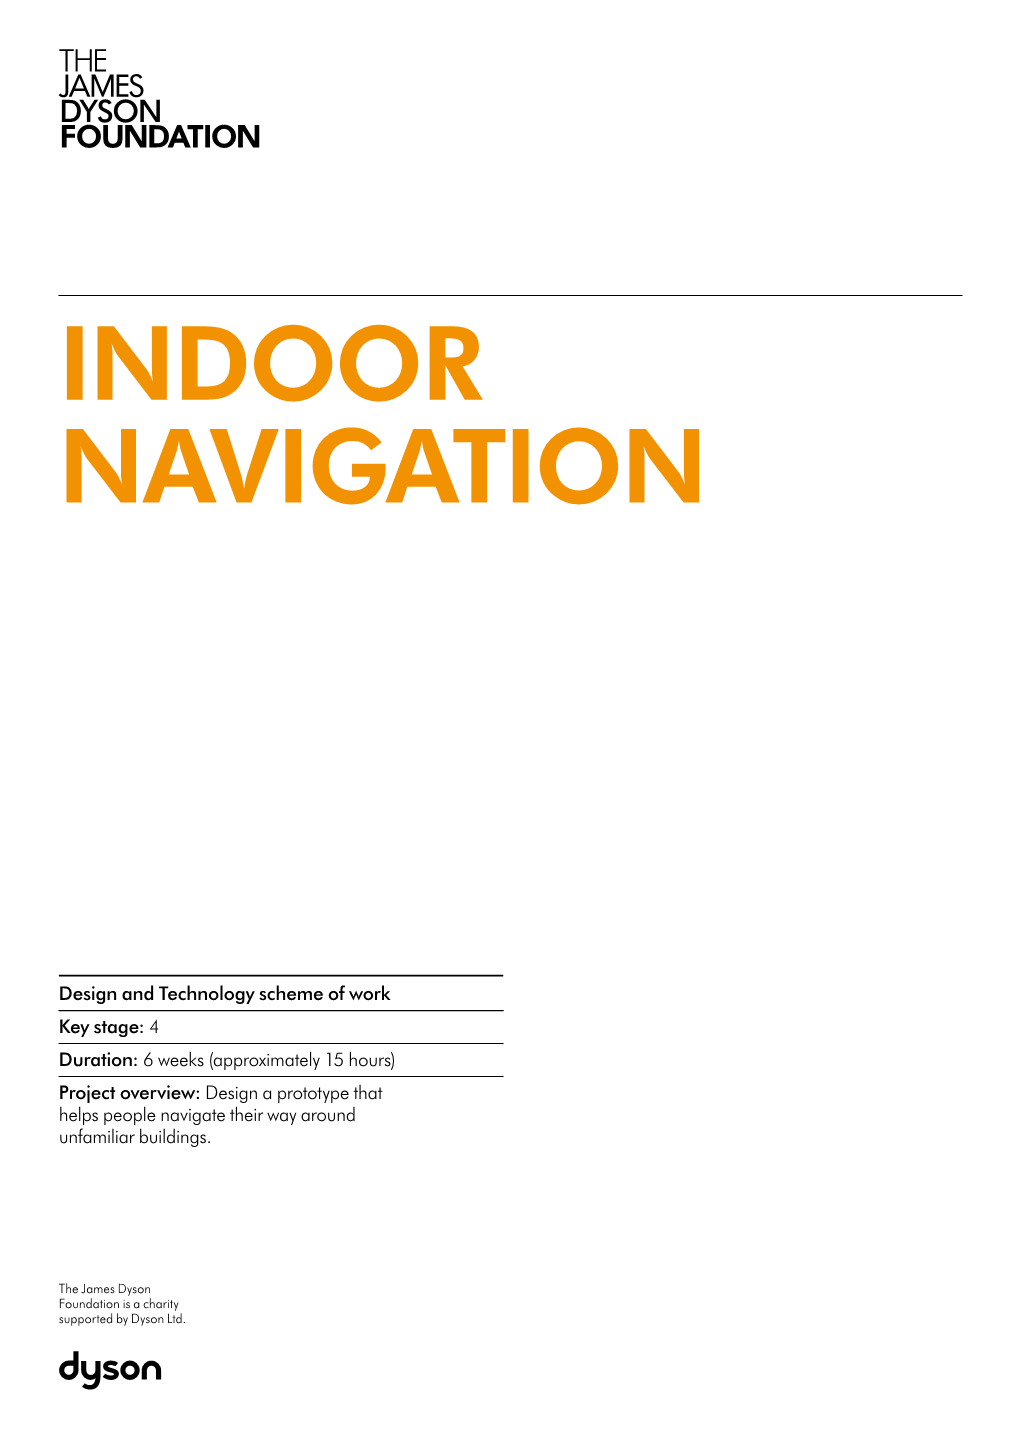 Indoor Navigation